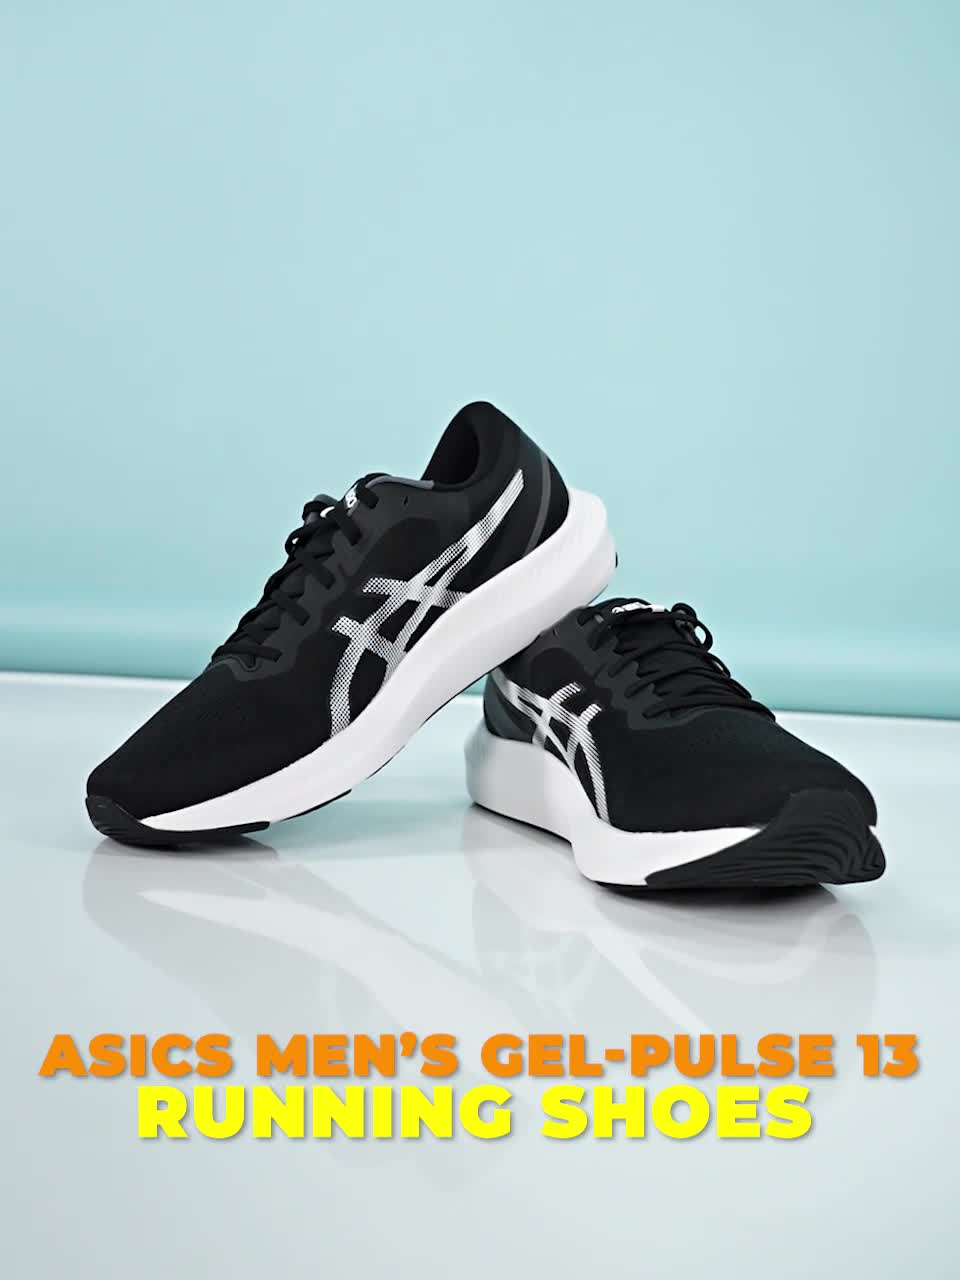 Men's GEL-PULSE 13, Black/White, Running